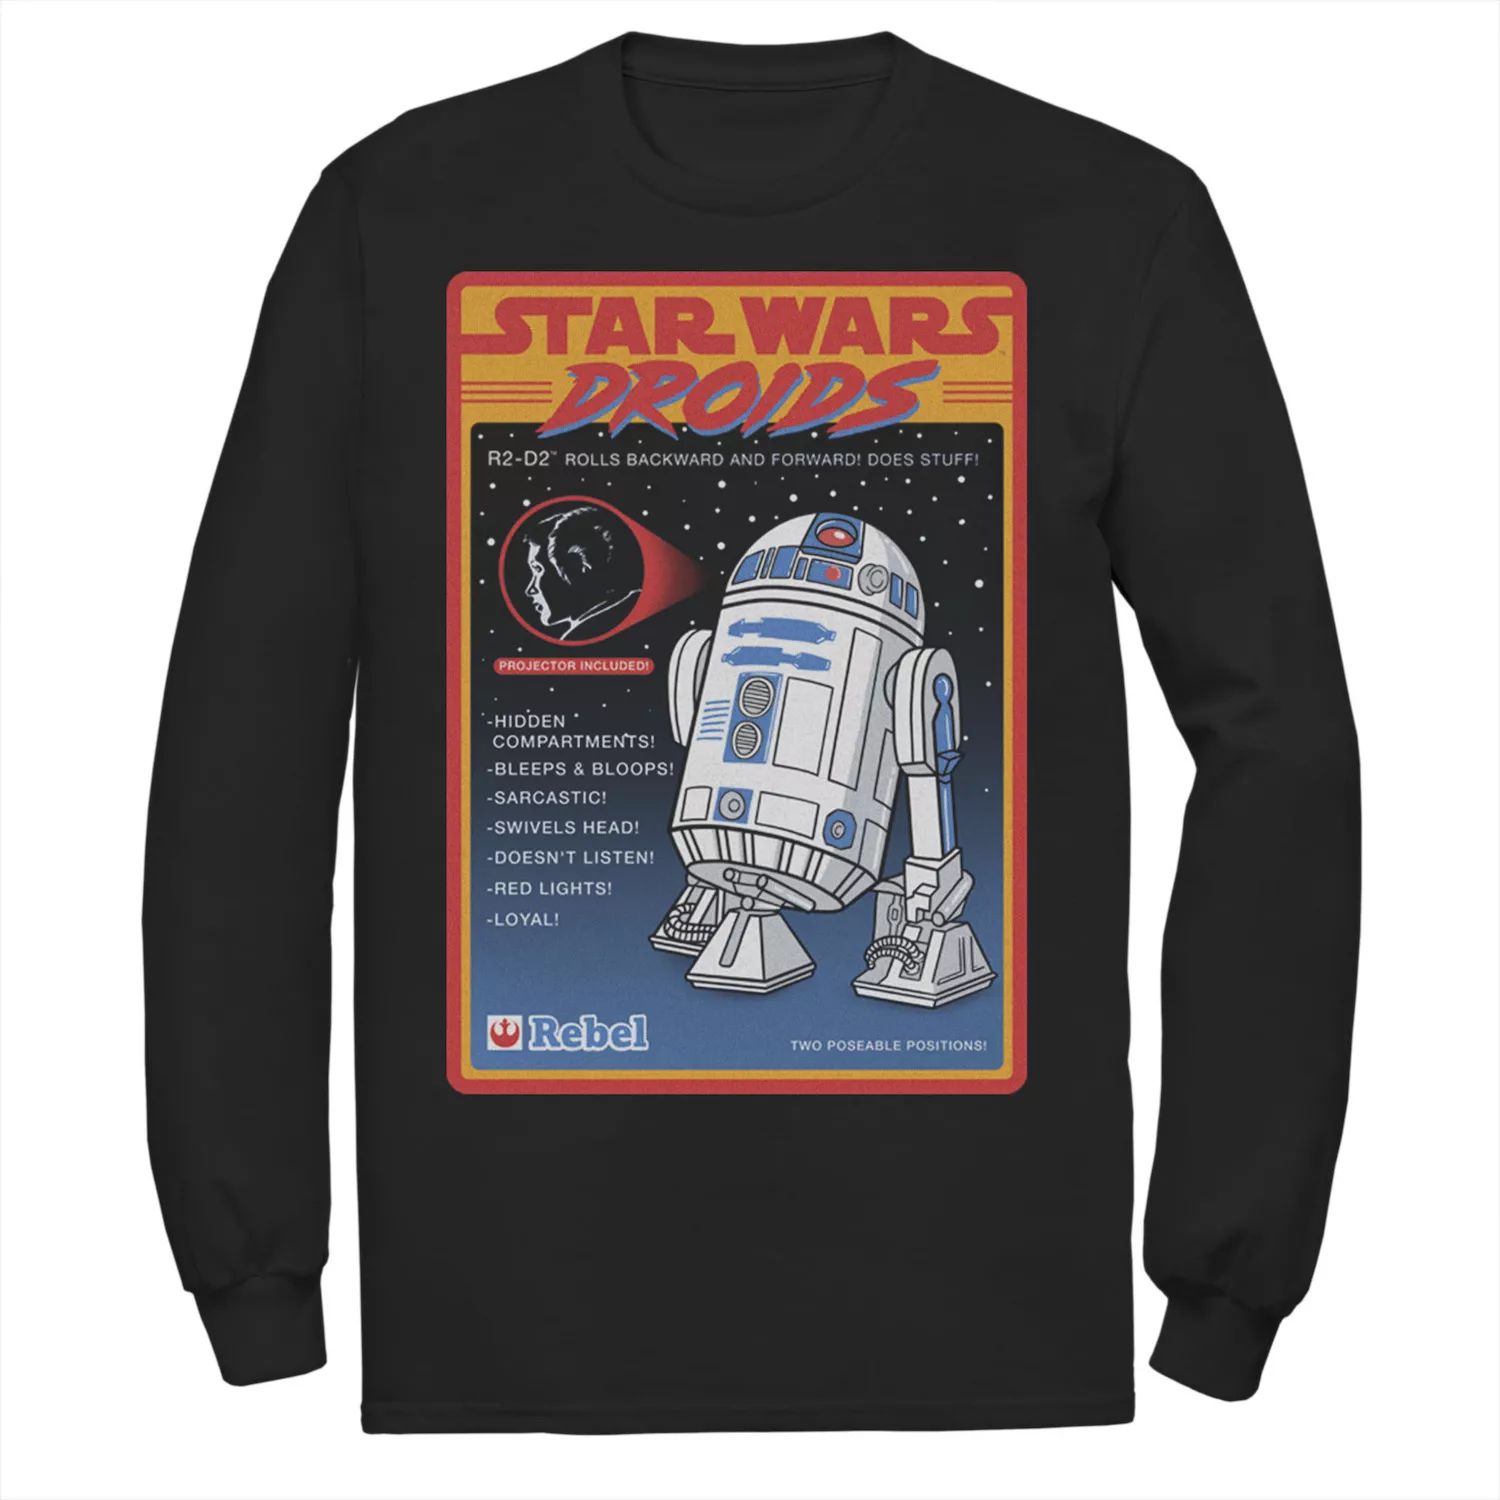 Мужская футболка с изображением «Звездных войн» Droids R2-D2 и рекламным плакатом с длинными рукавами Star Wars